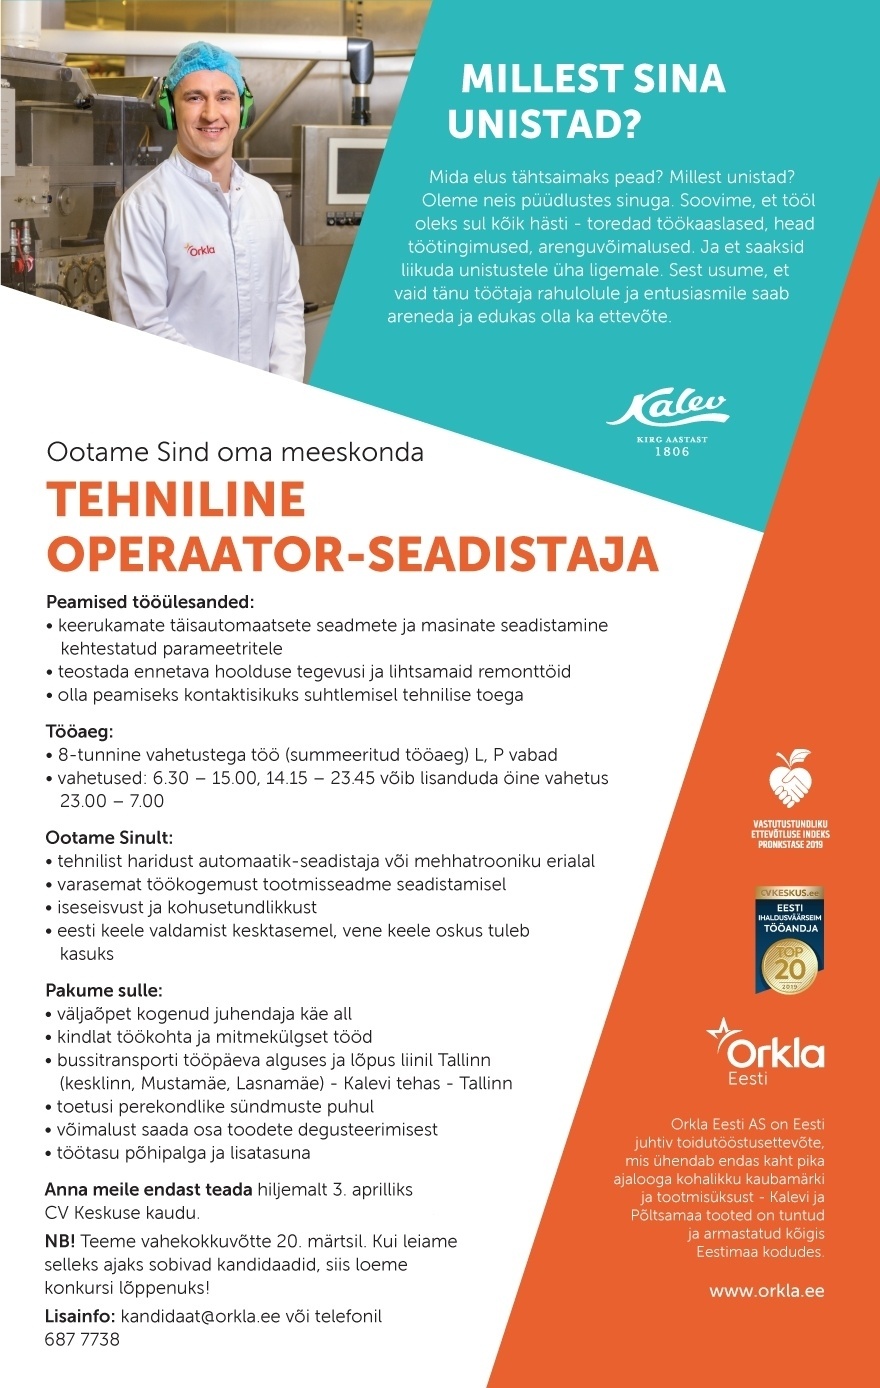 Orkla Eesti AS (Kalevi ja Põltsamaa Felix) Tehniline operaator-seadistaja